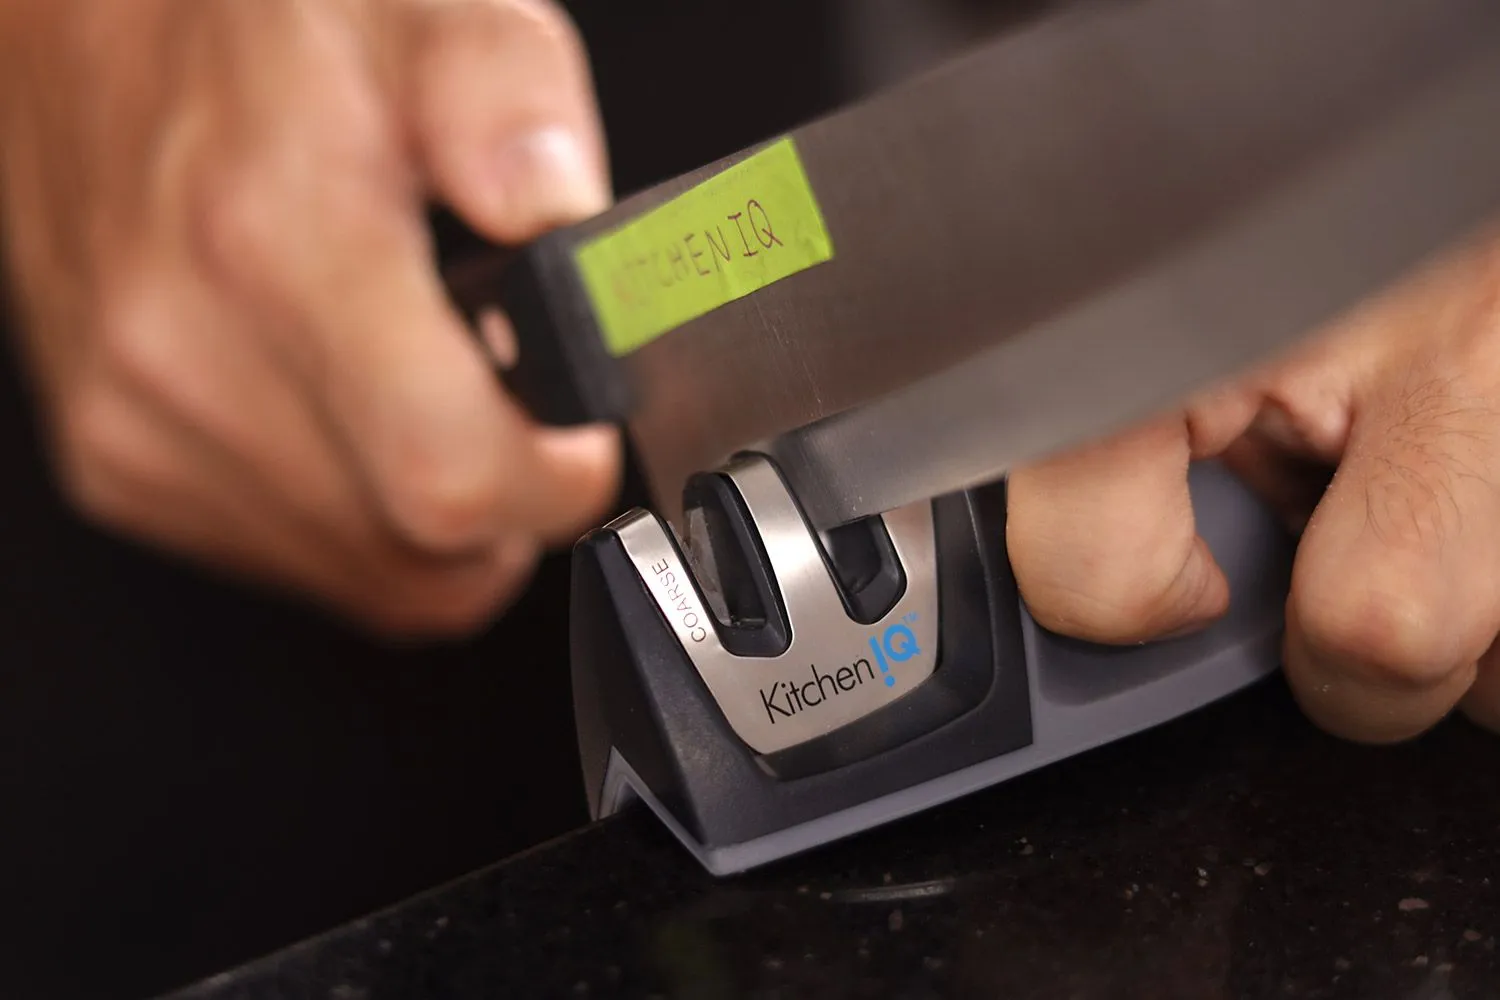 Best Cheap KitchenIQ Edge Grip 2-Stage Knife Sharpener Review 